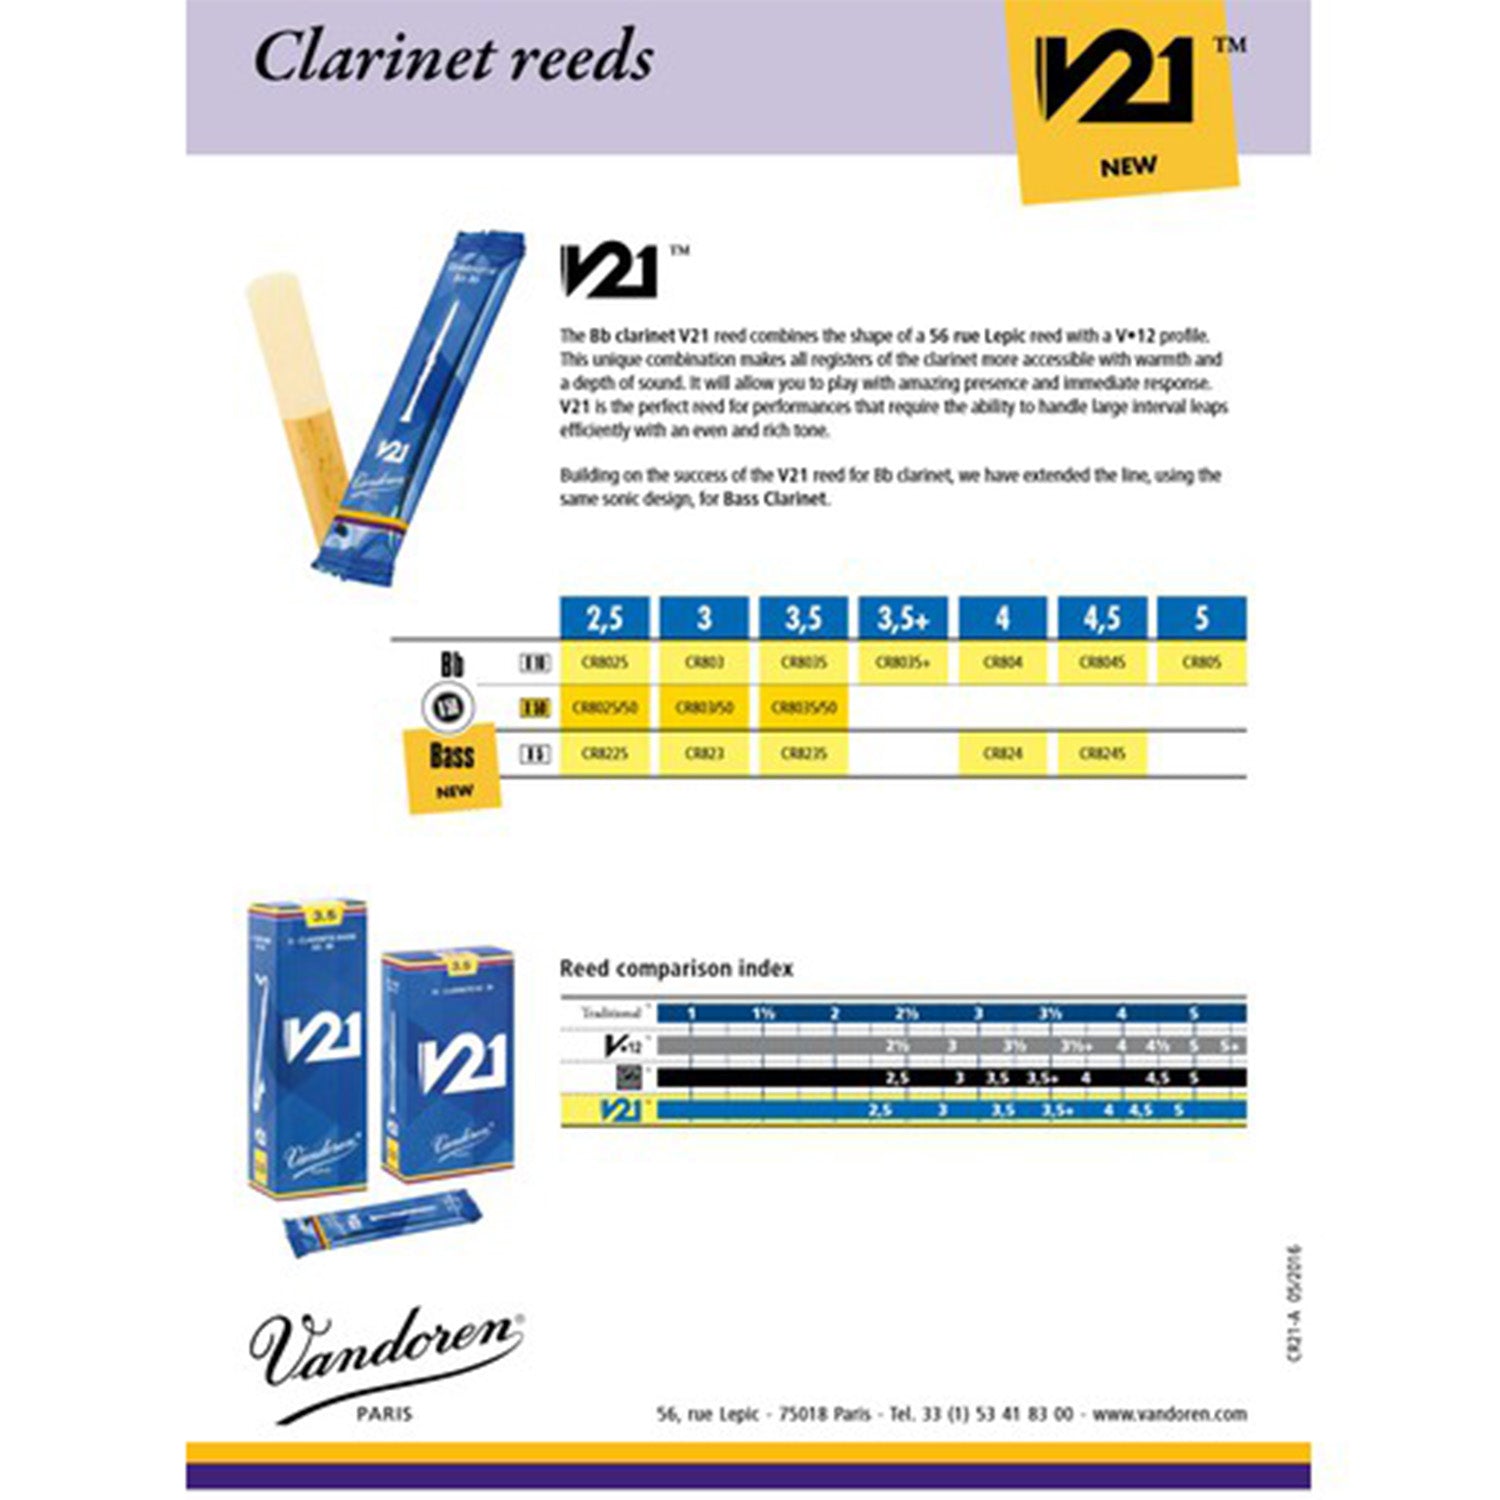 Vandoren V21 reed info sheet